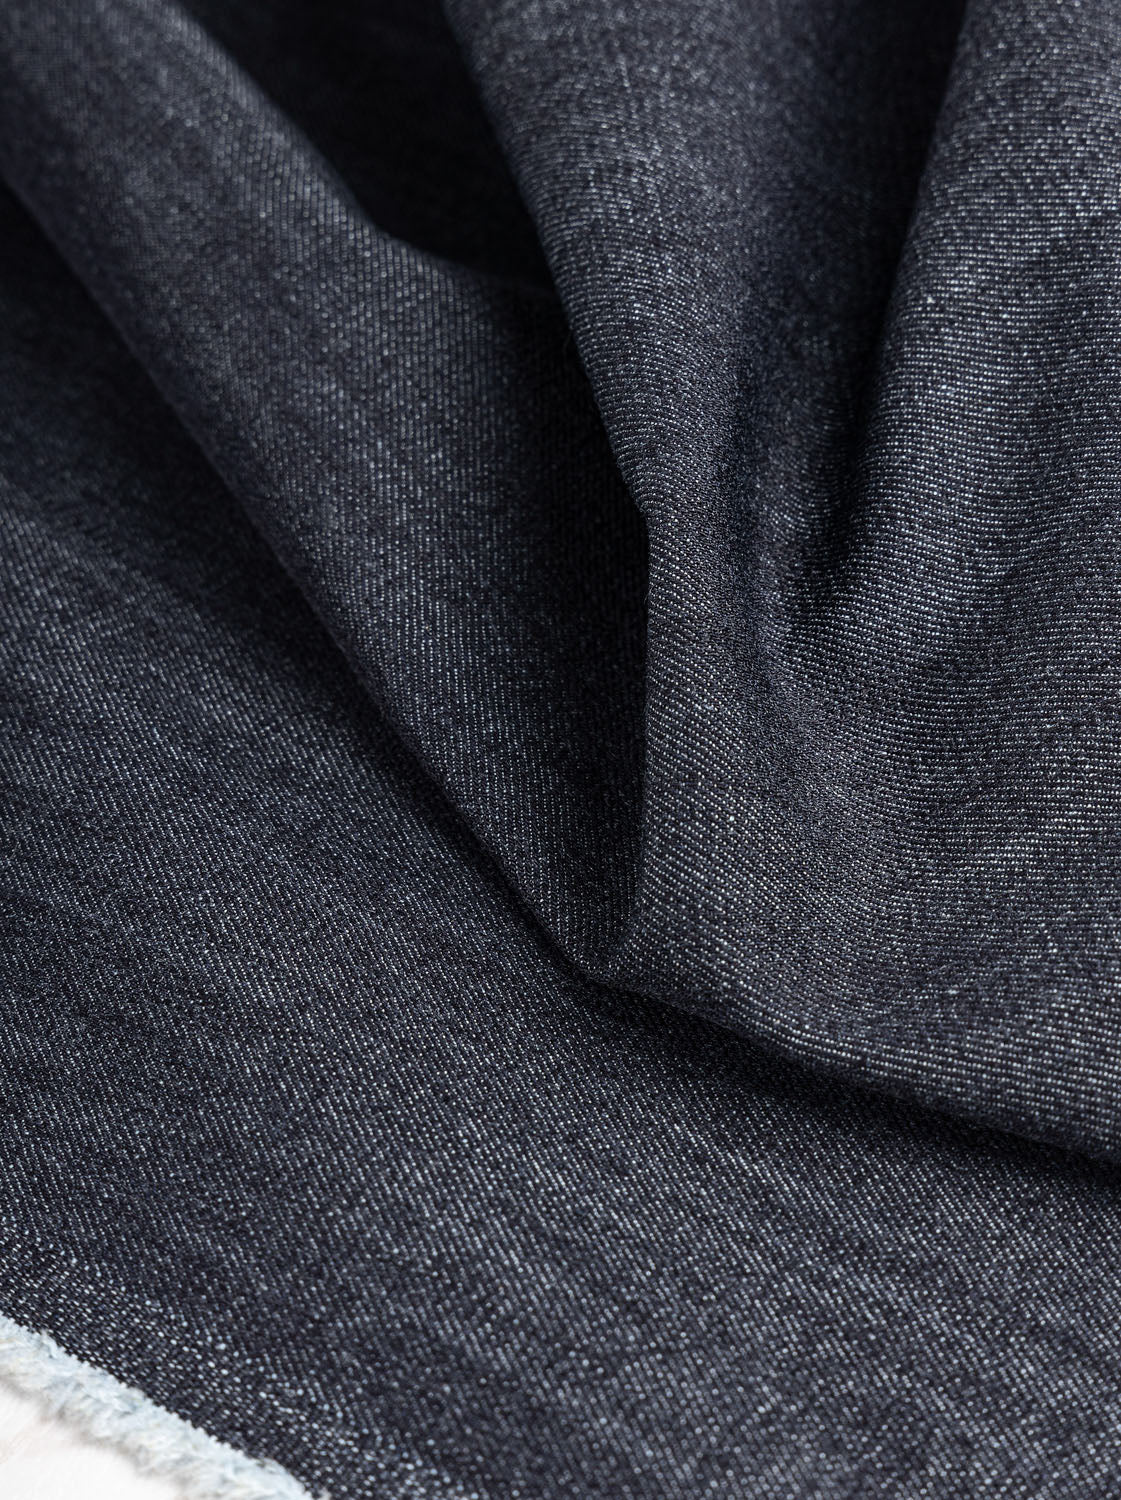 High End Designer Dark Wash Cotton Denim Fabric by the Yard – Fancy Frocks  Fabrics